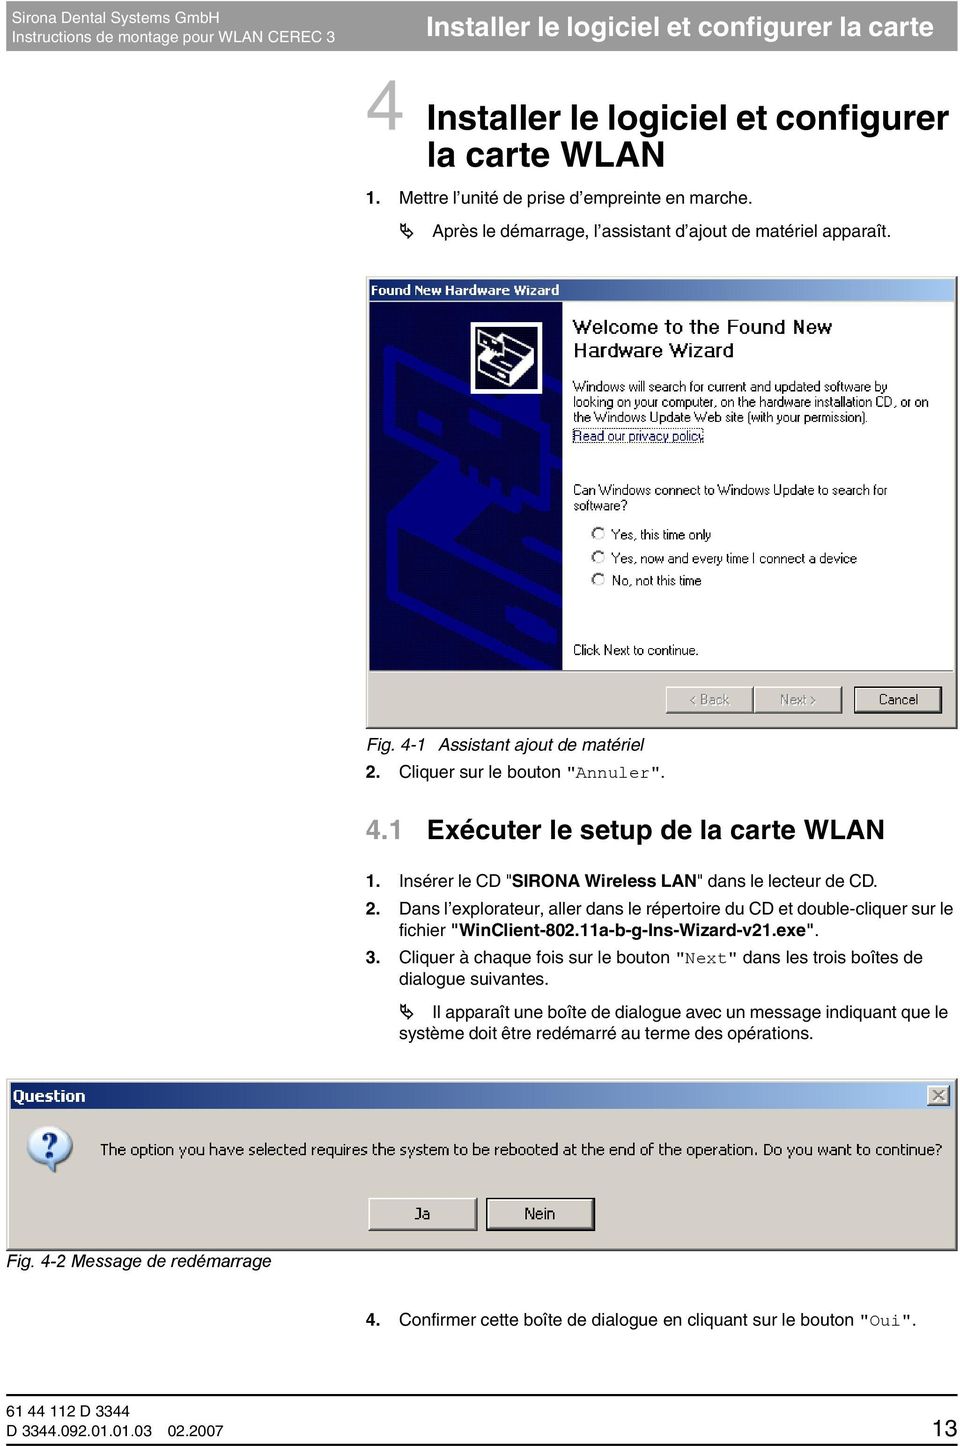 Insérer le CD "SIRONA Wireless LAN" dans le lecteur de CD. 2. Dans l explorateur, aller dans le répertoire du CD et double-cliquer sur le fichier "WinClient-802.11a-b-g-Ins-Wizard-v21.exe". 3.